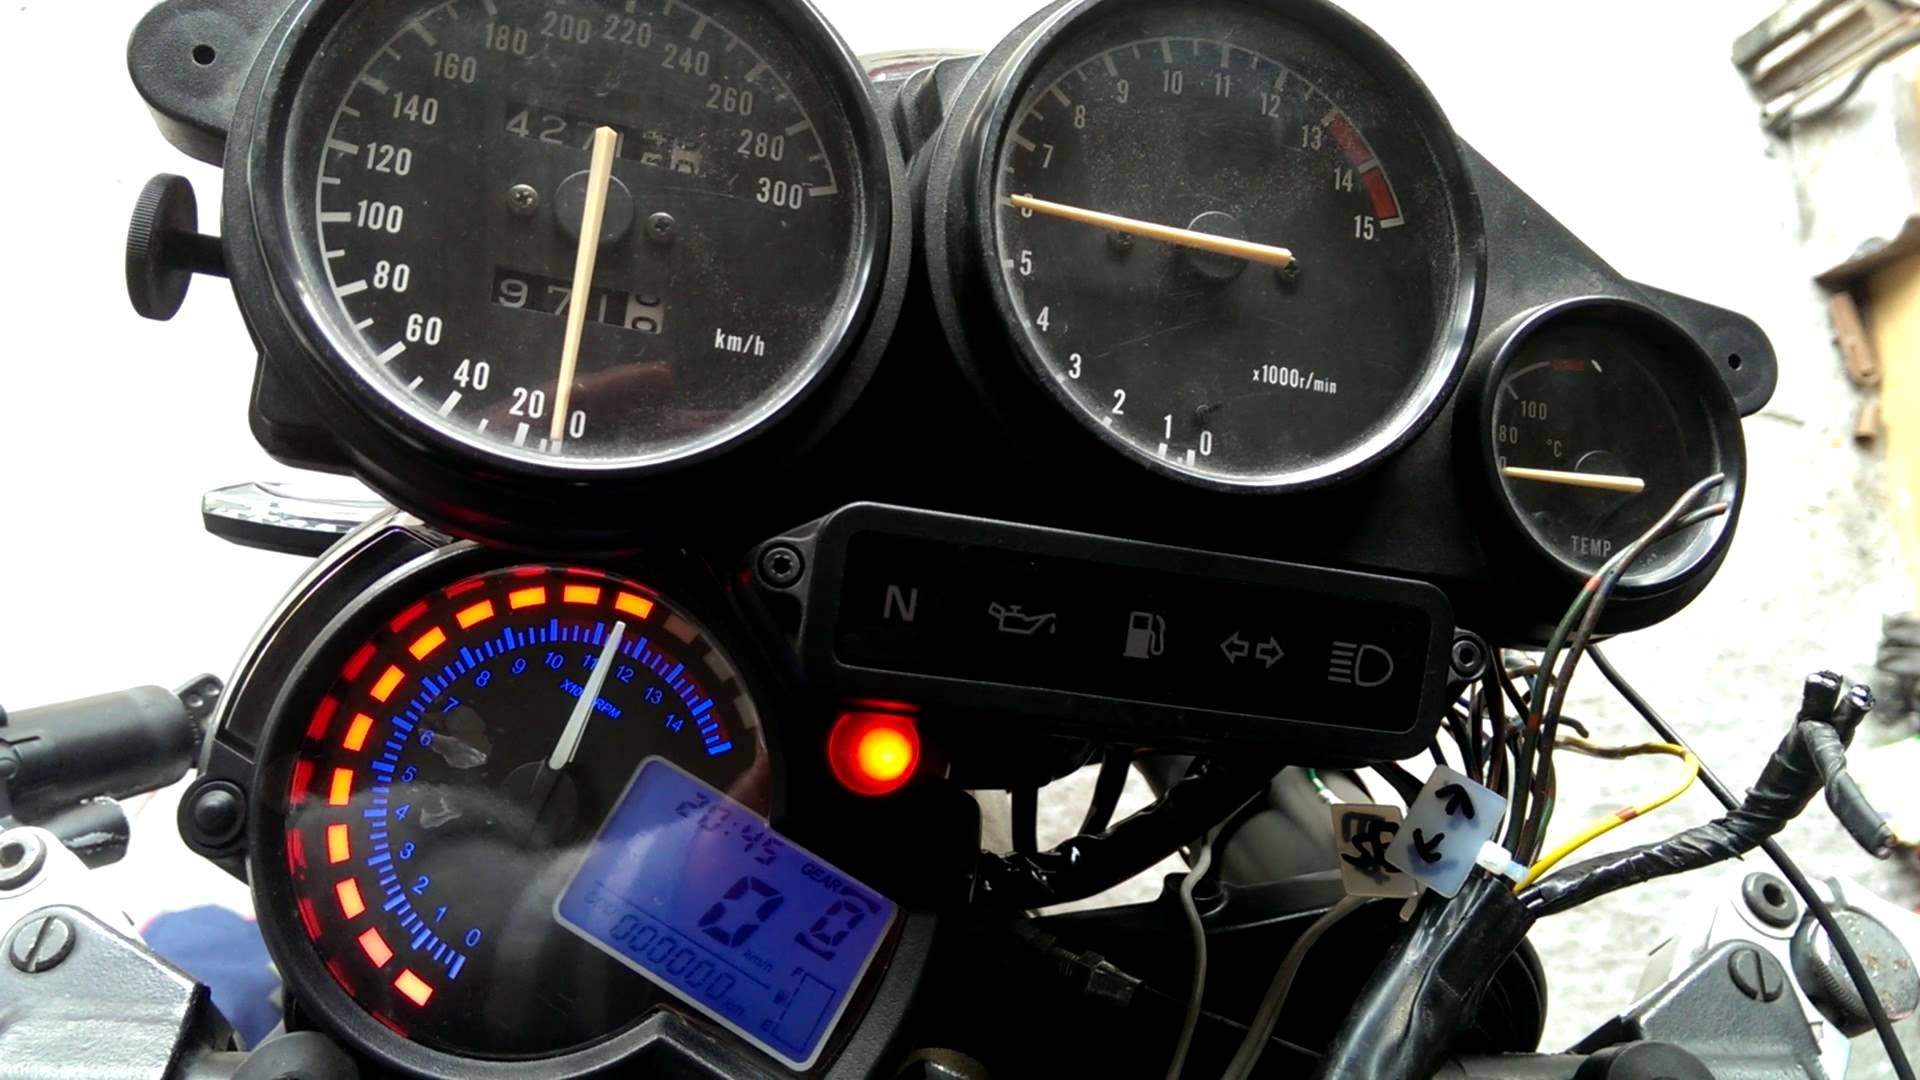 Digital Speedometer Circuit Diagram for Motorcycle Backlight Lcd Digital Motorcycle Speedometer Odometer Tachometer Of Digital Speedometer Circuit Diagram for Motorcycle